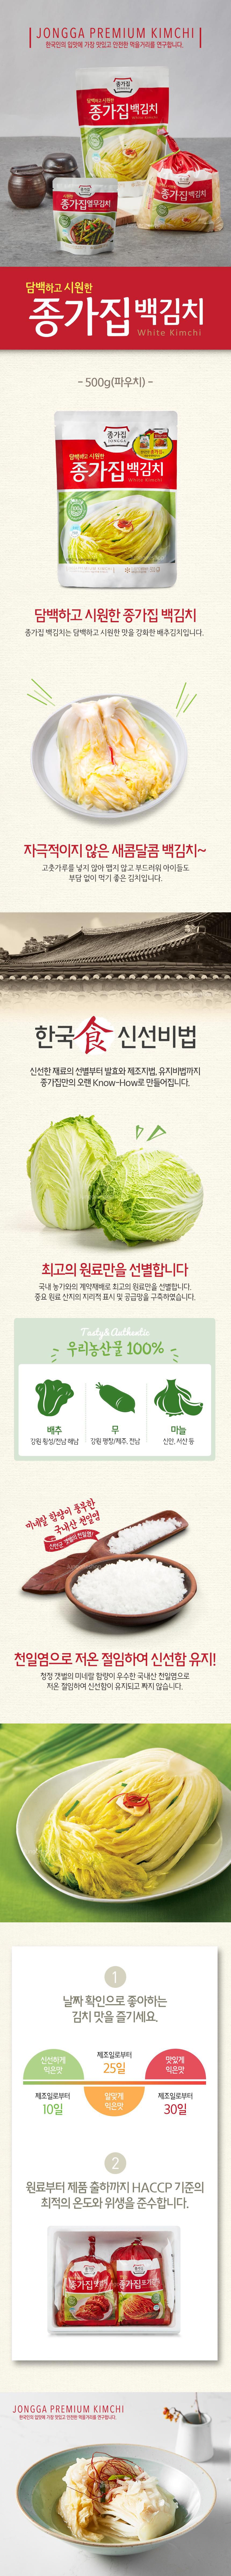 韓國食品-[宗家] 白泡菜 500g